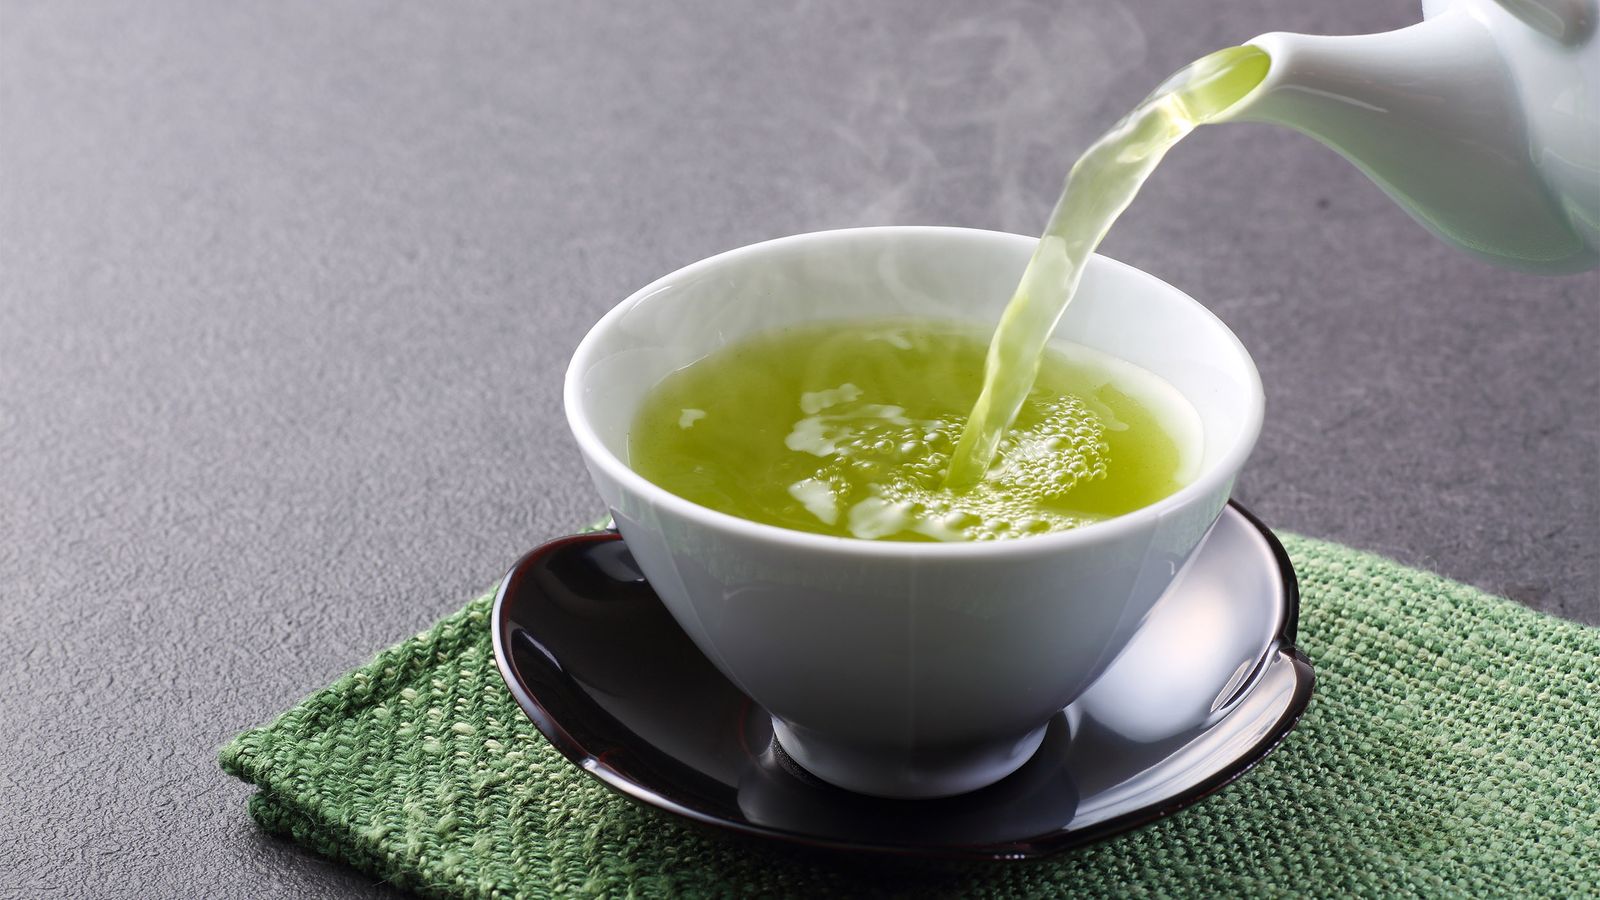 Grüner Tee wird in eine Tasse gegossen